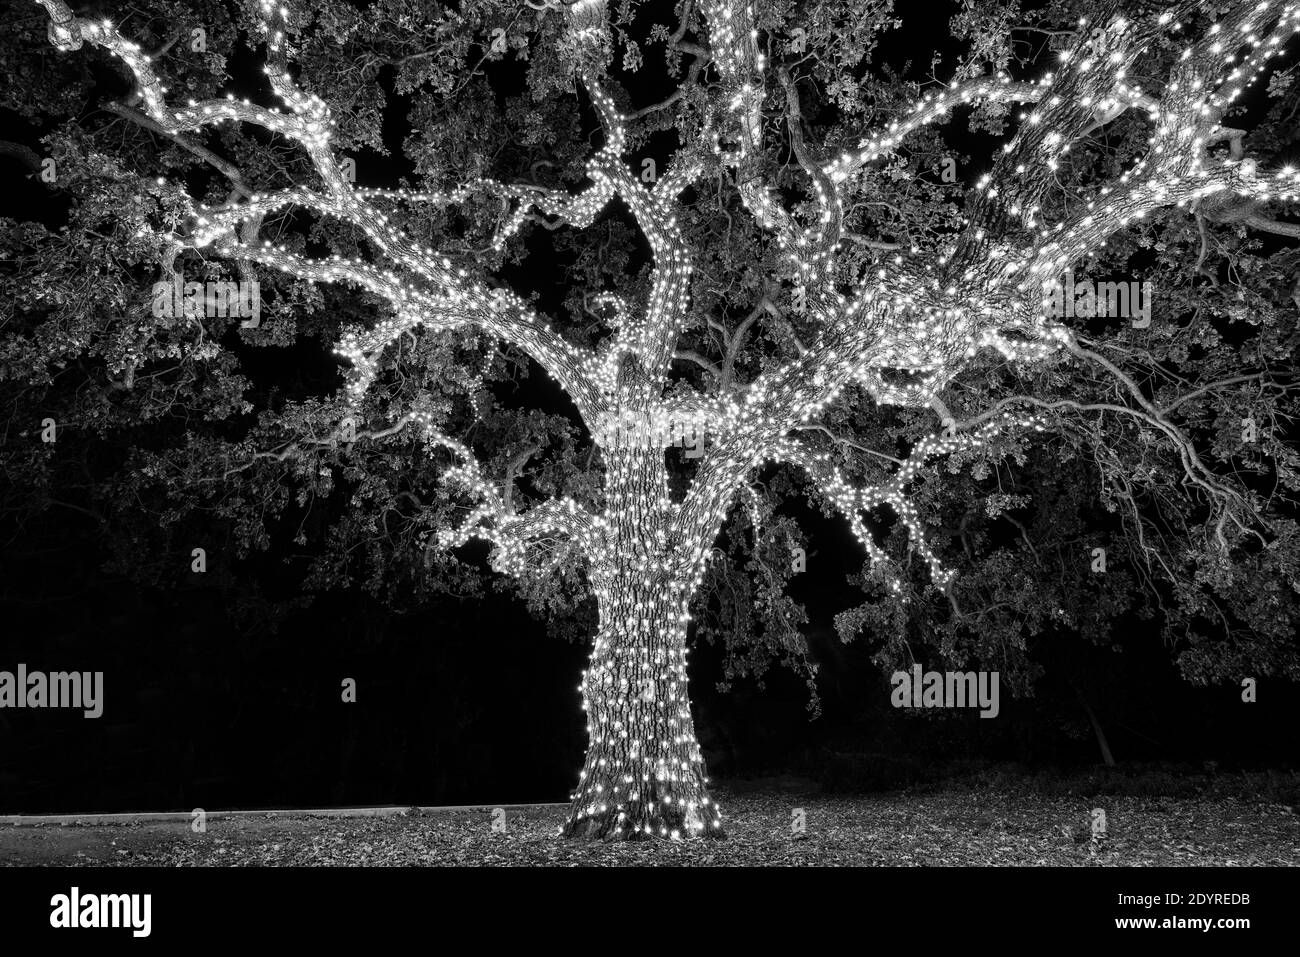 Vue en noir et blanc de l'ancien arbre enveloppé de lumières décoratives de Noël. Banque D'Images